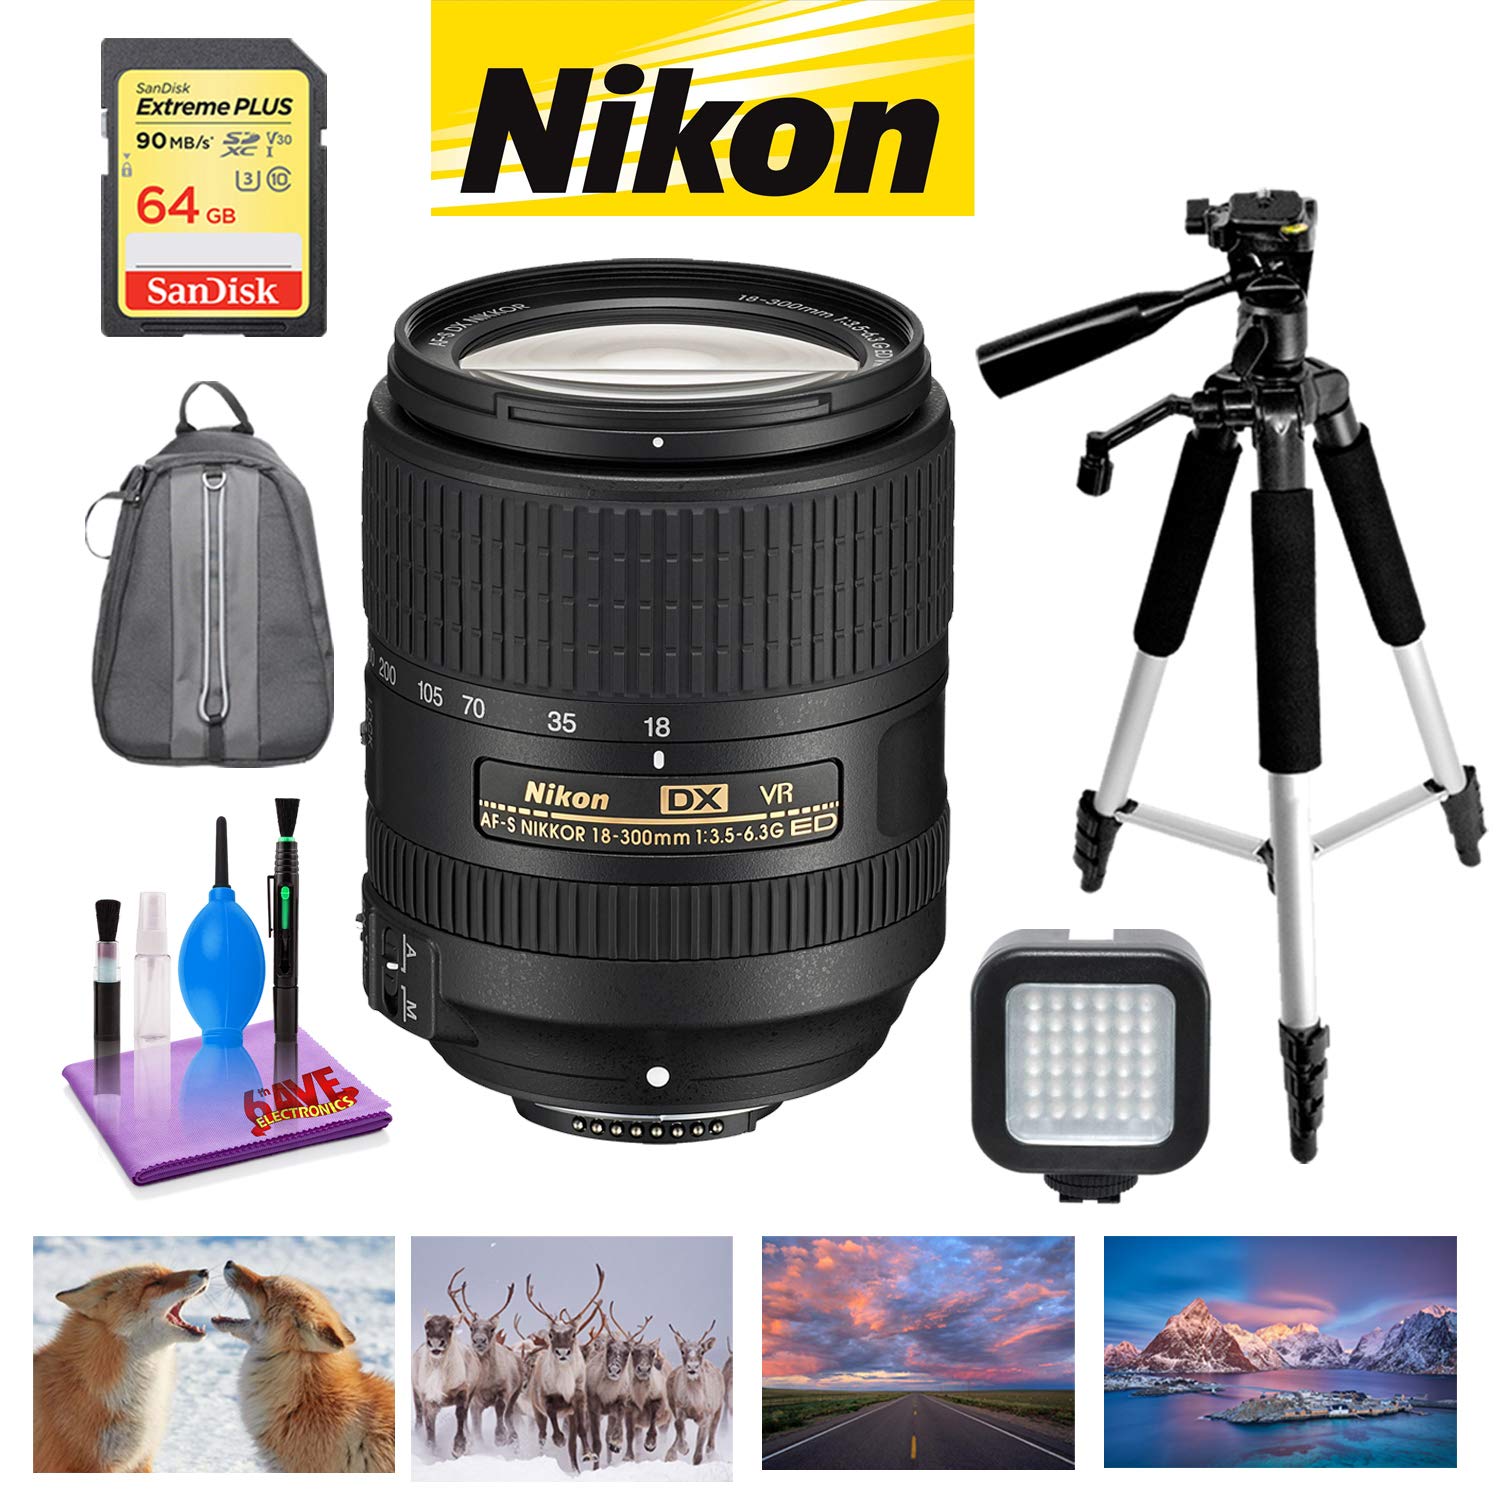 NIKON 18-300MM F/3.5-6.3G ED AF-S DX VR Lens with Sandisk 64GB Memory, Portable LED Light, and Deluxe Padded Backpack Bundle